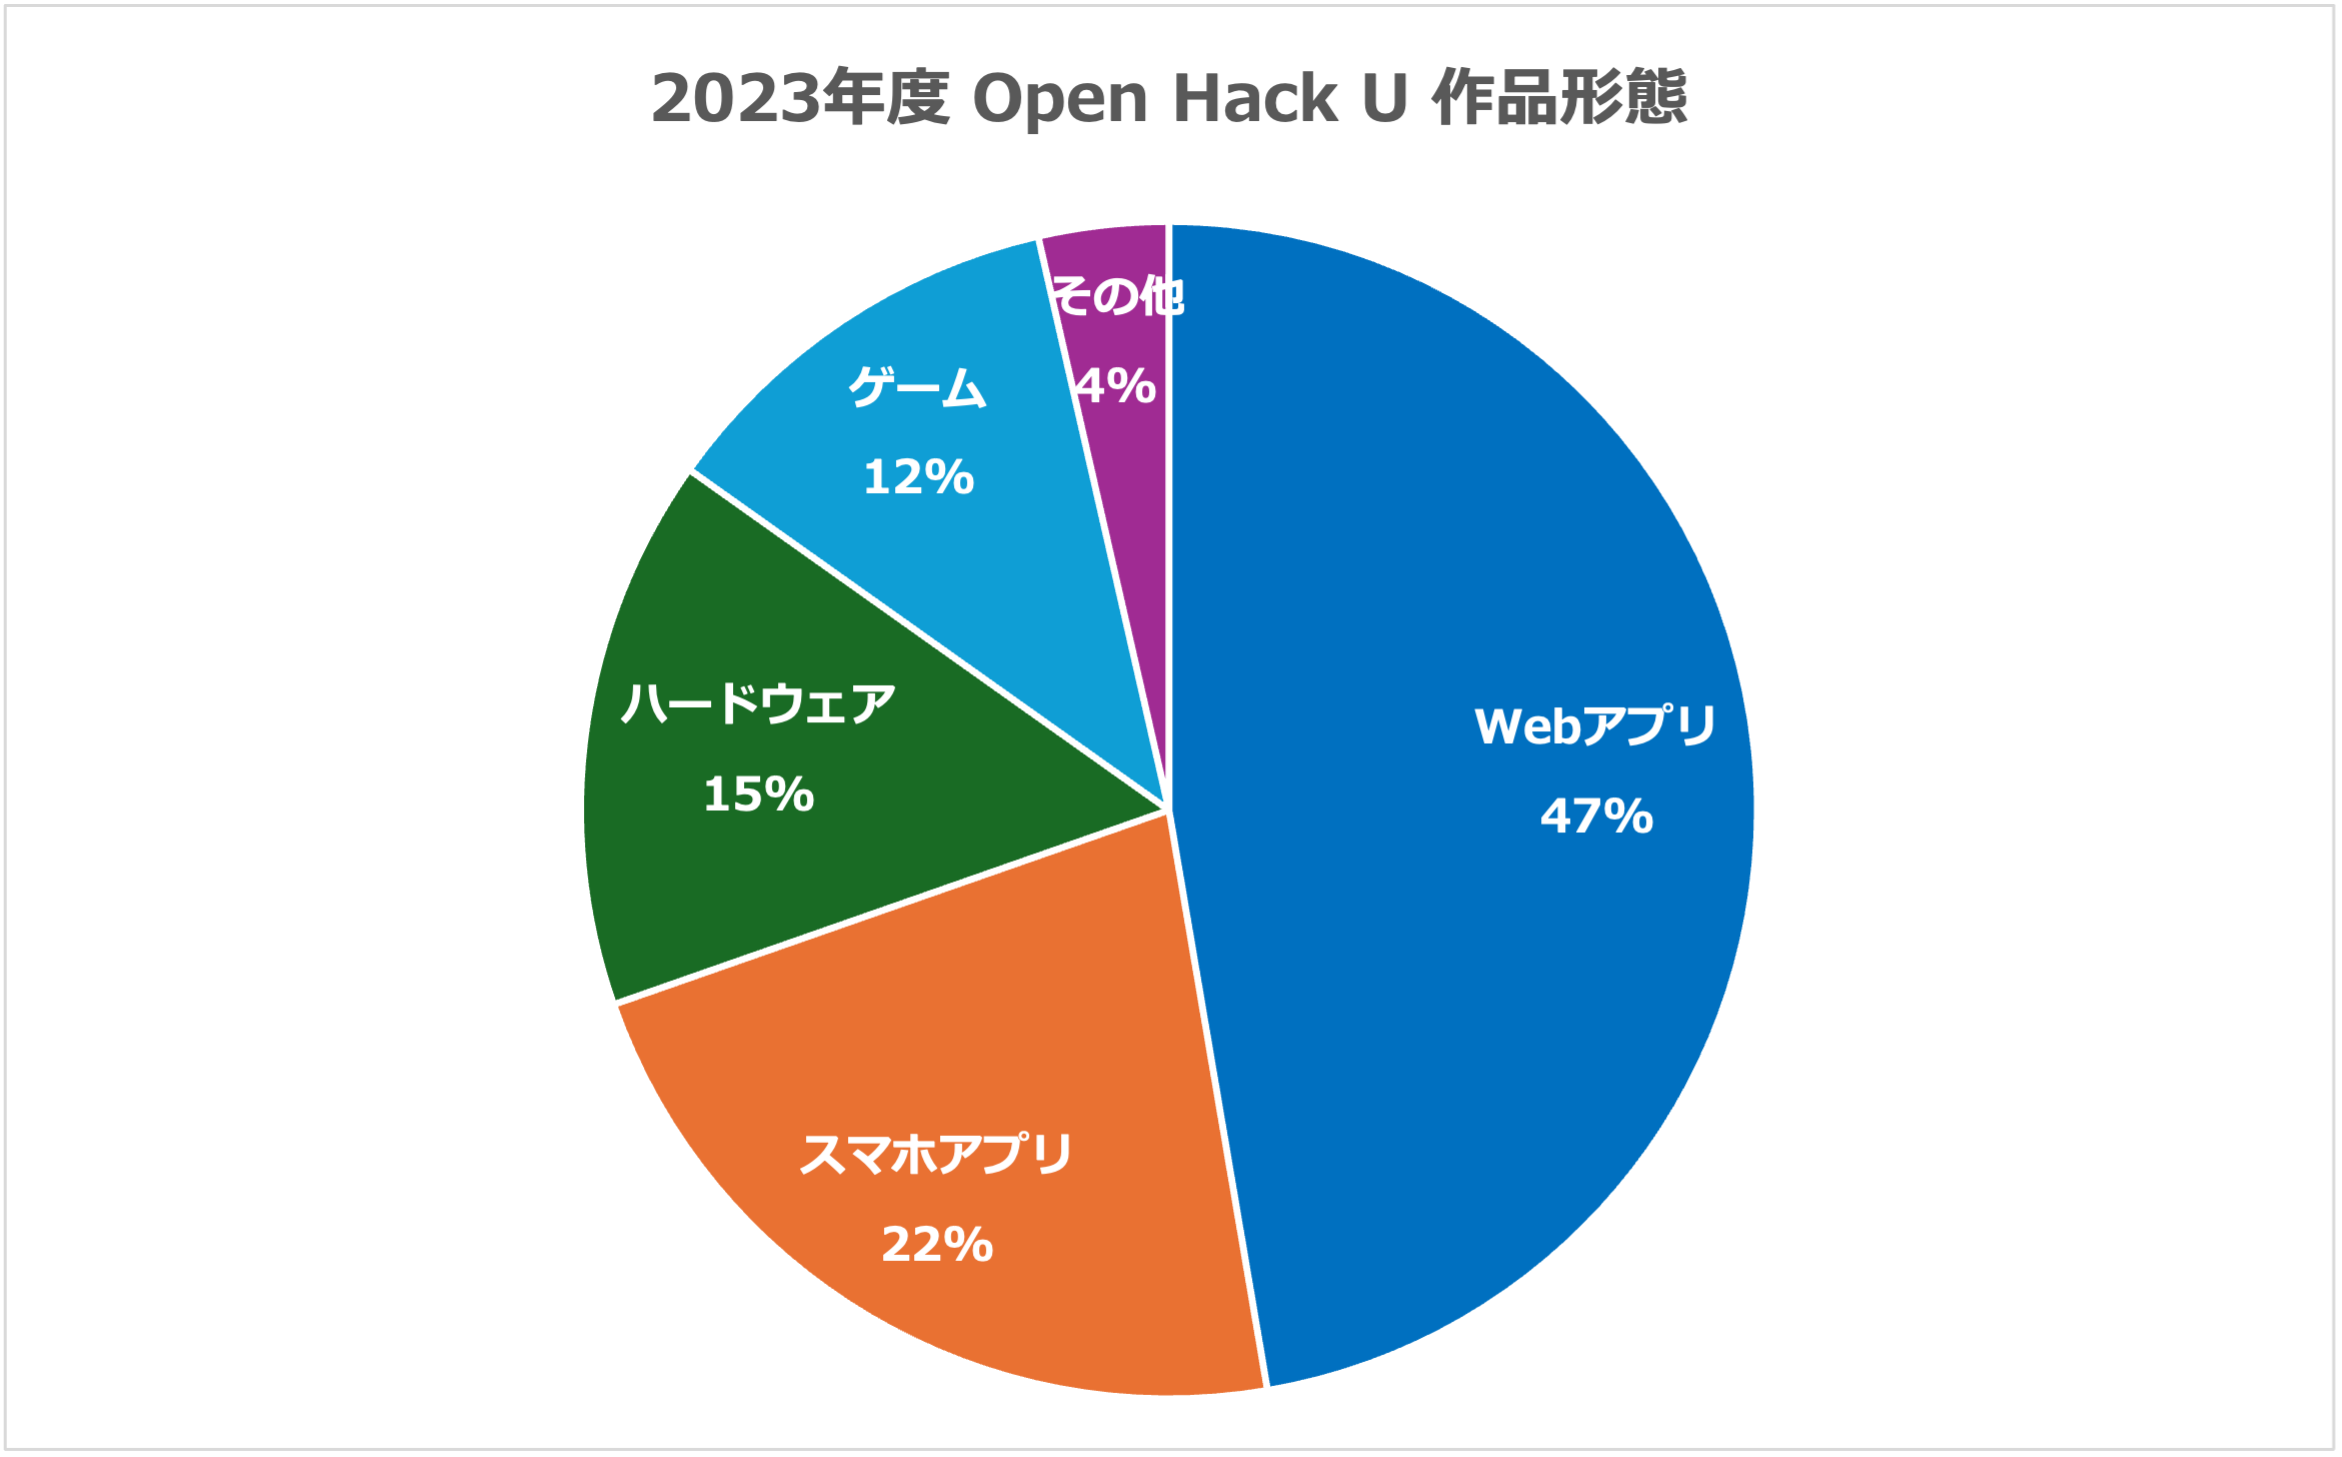 2023年度 Open Hack U 作品形態